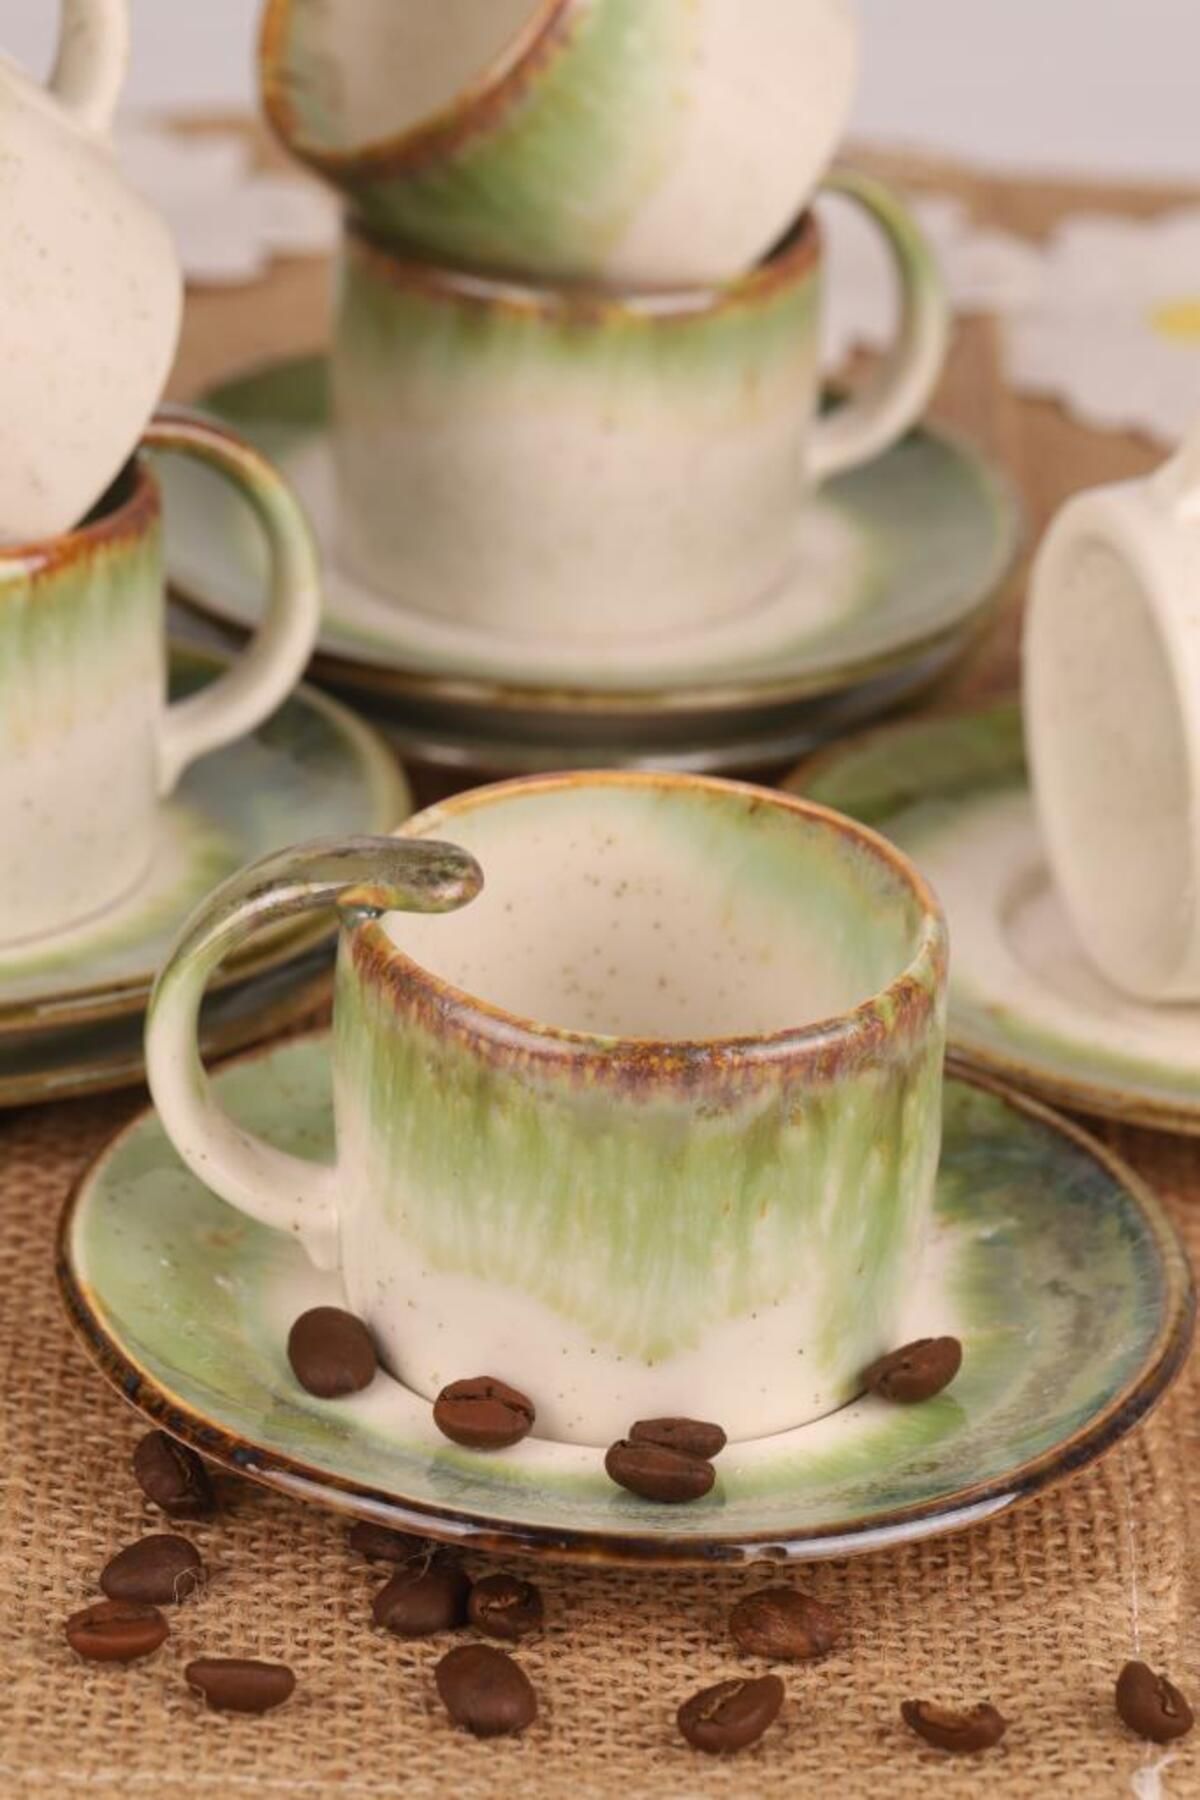 Atbyhome Jasmine 6 Kişilik Porselen Kristal Kahve Fincan Takımı Yeşil